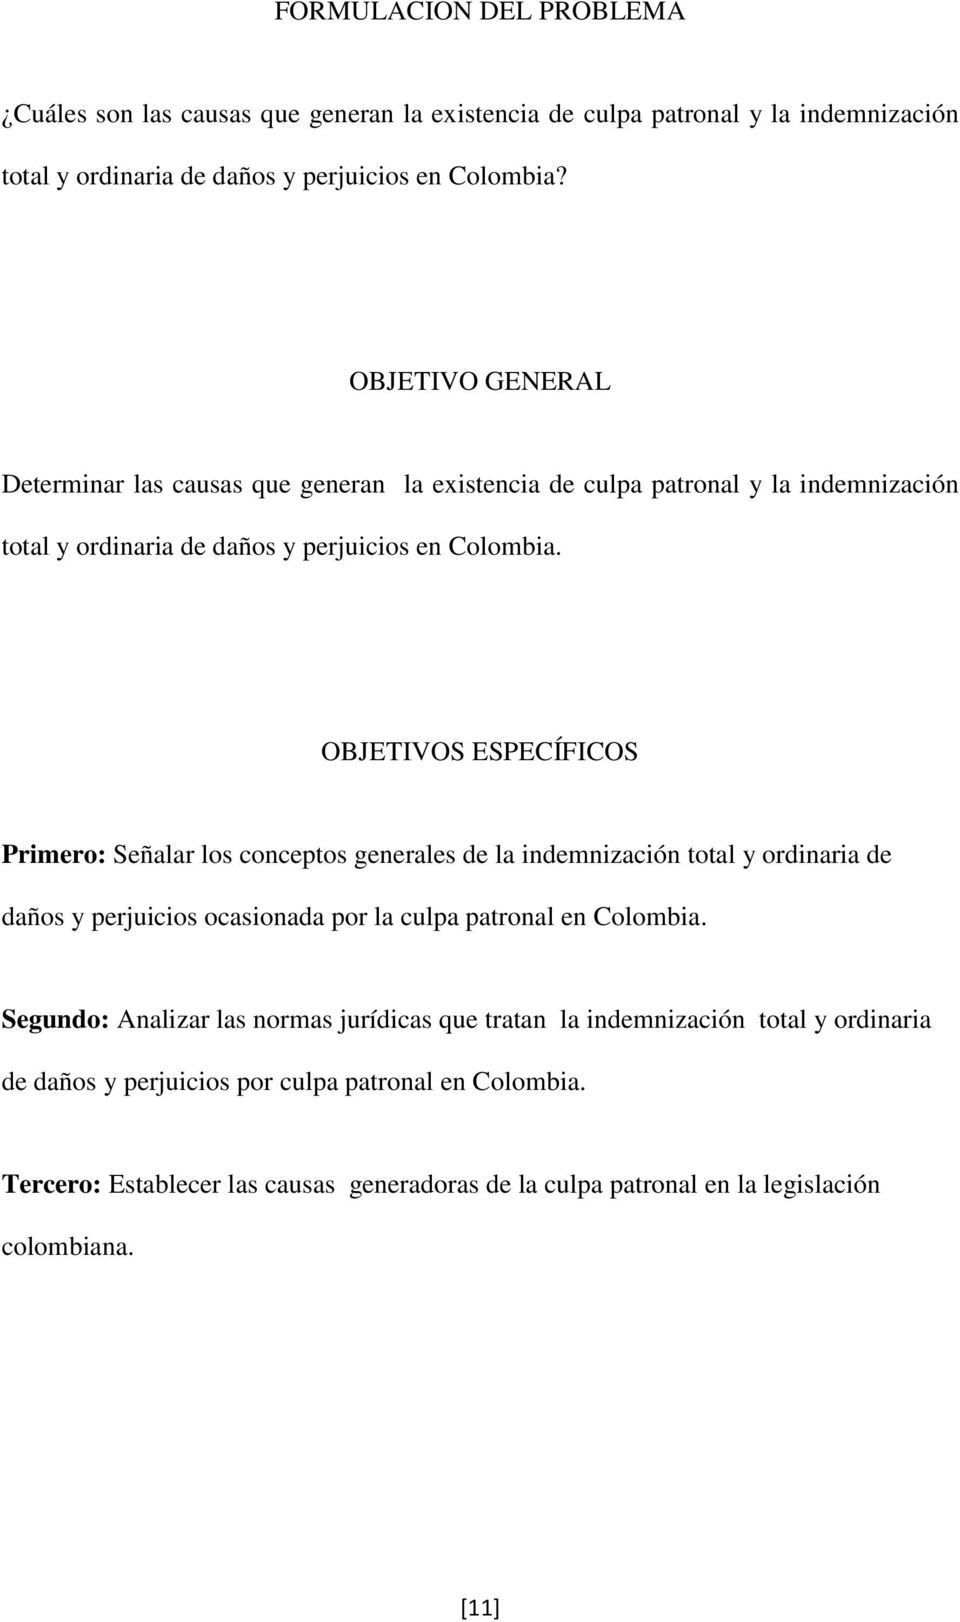 OBJETIVOS ESPECÍFICOS Primero: Señalar los conceptos generales de la indemnización total y ordinaria de daños y perjuicios ocasionada por la culpa patronal en Colombia.